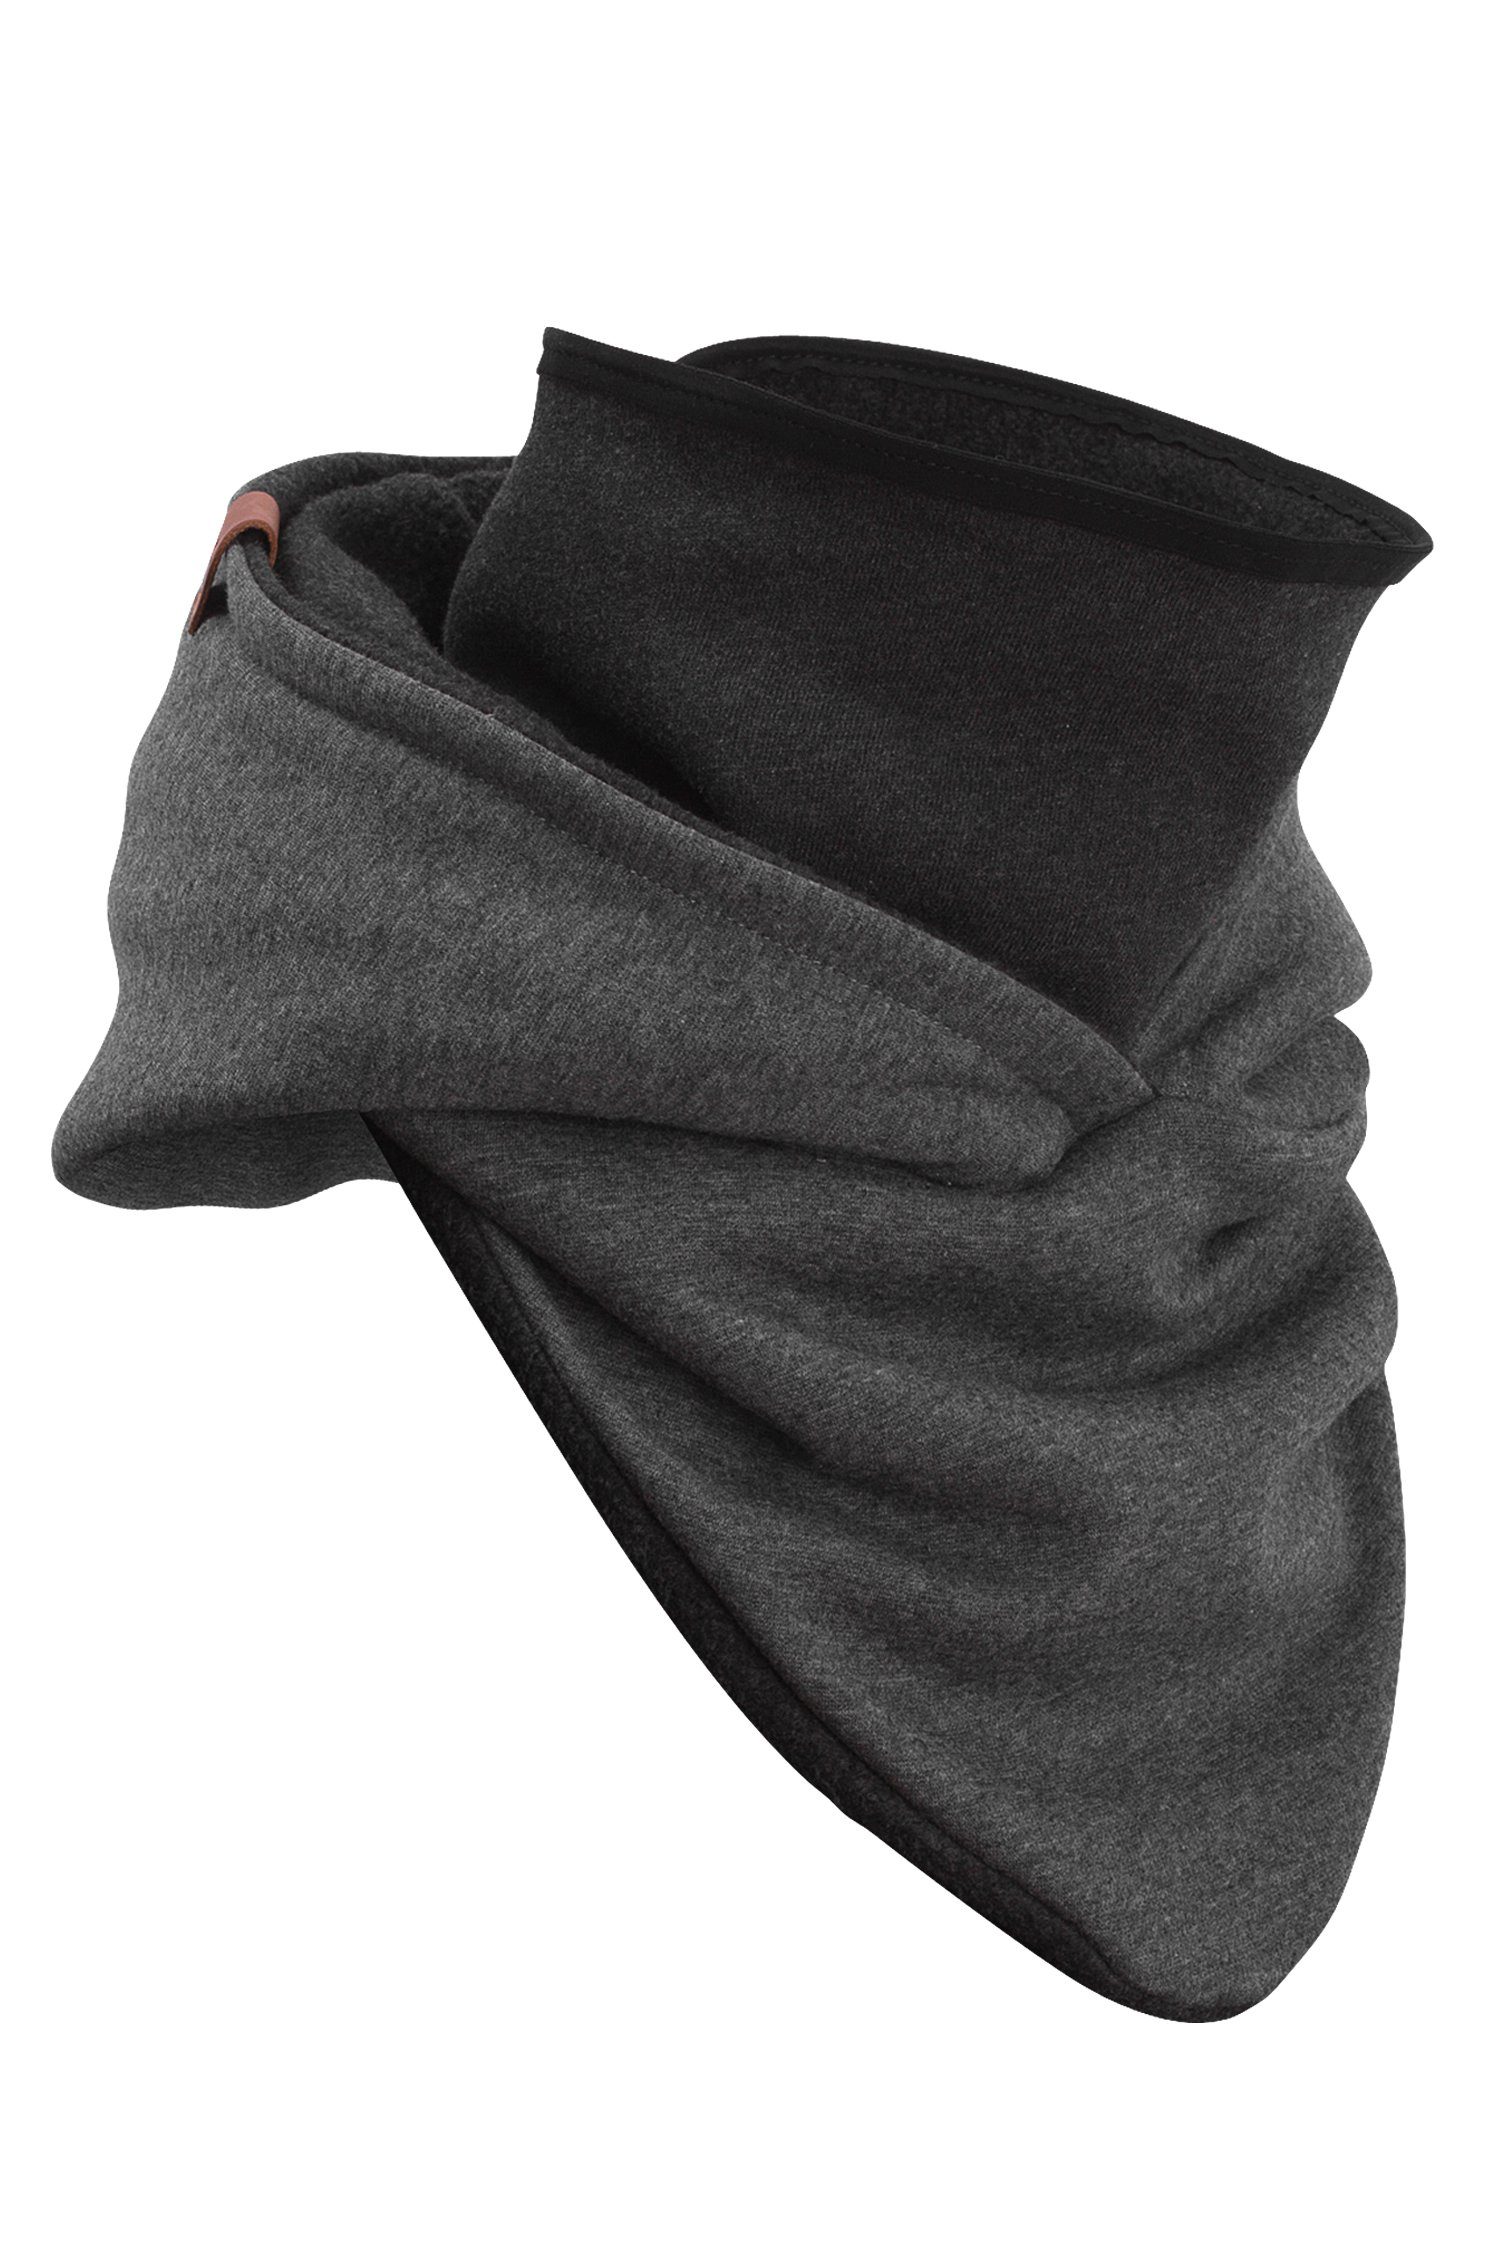 Manufaktur13 Schal Hooded Loop aus Rough Schal mit Kapuzenschal, Alpenfleece, integriertem - Windbreaker Dark